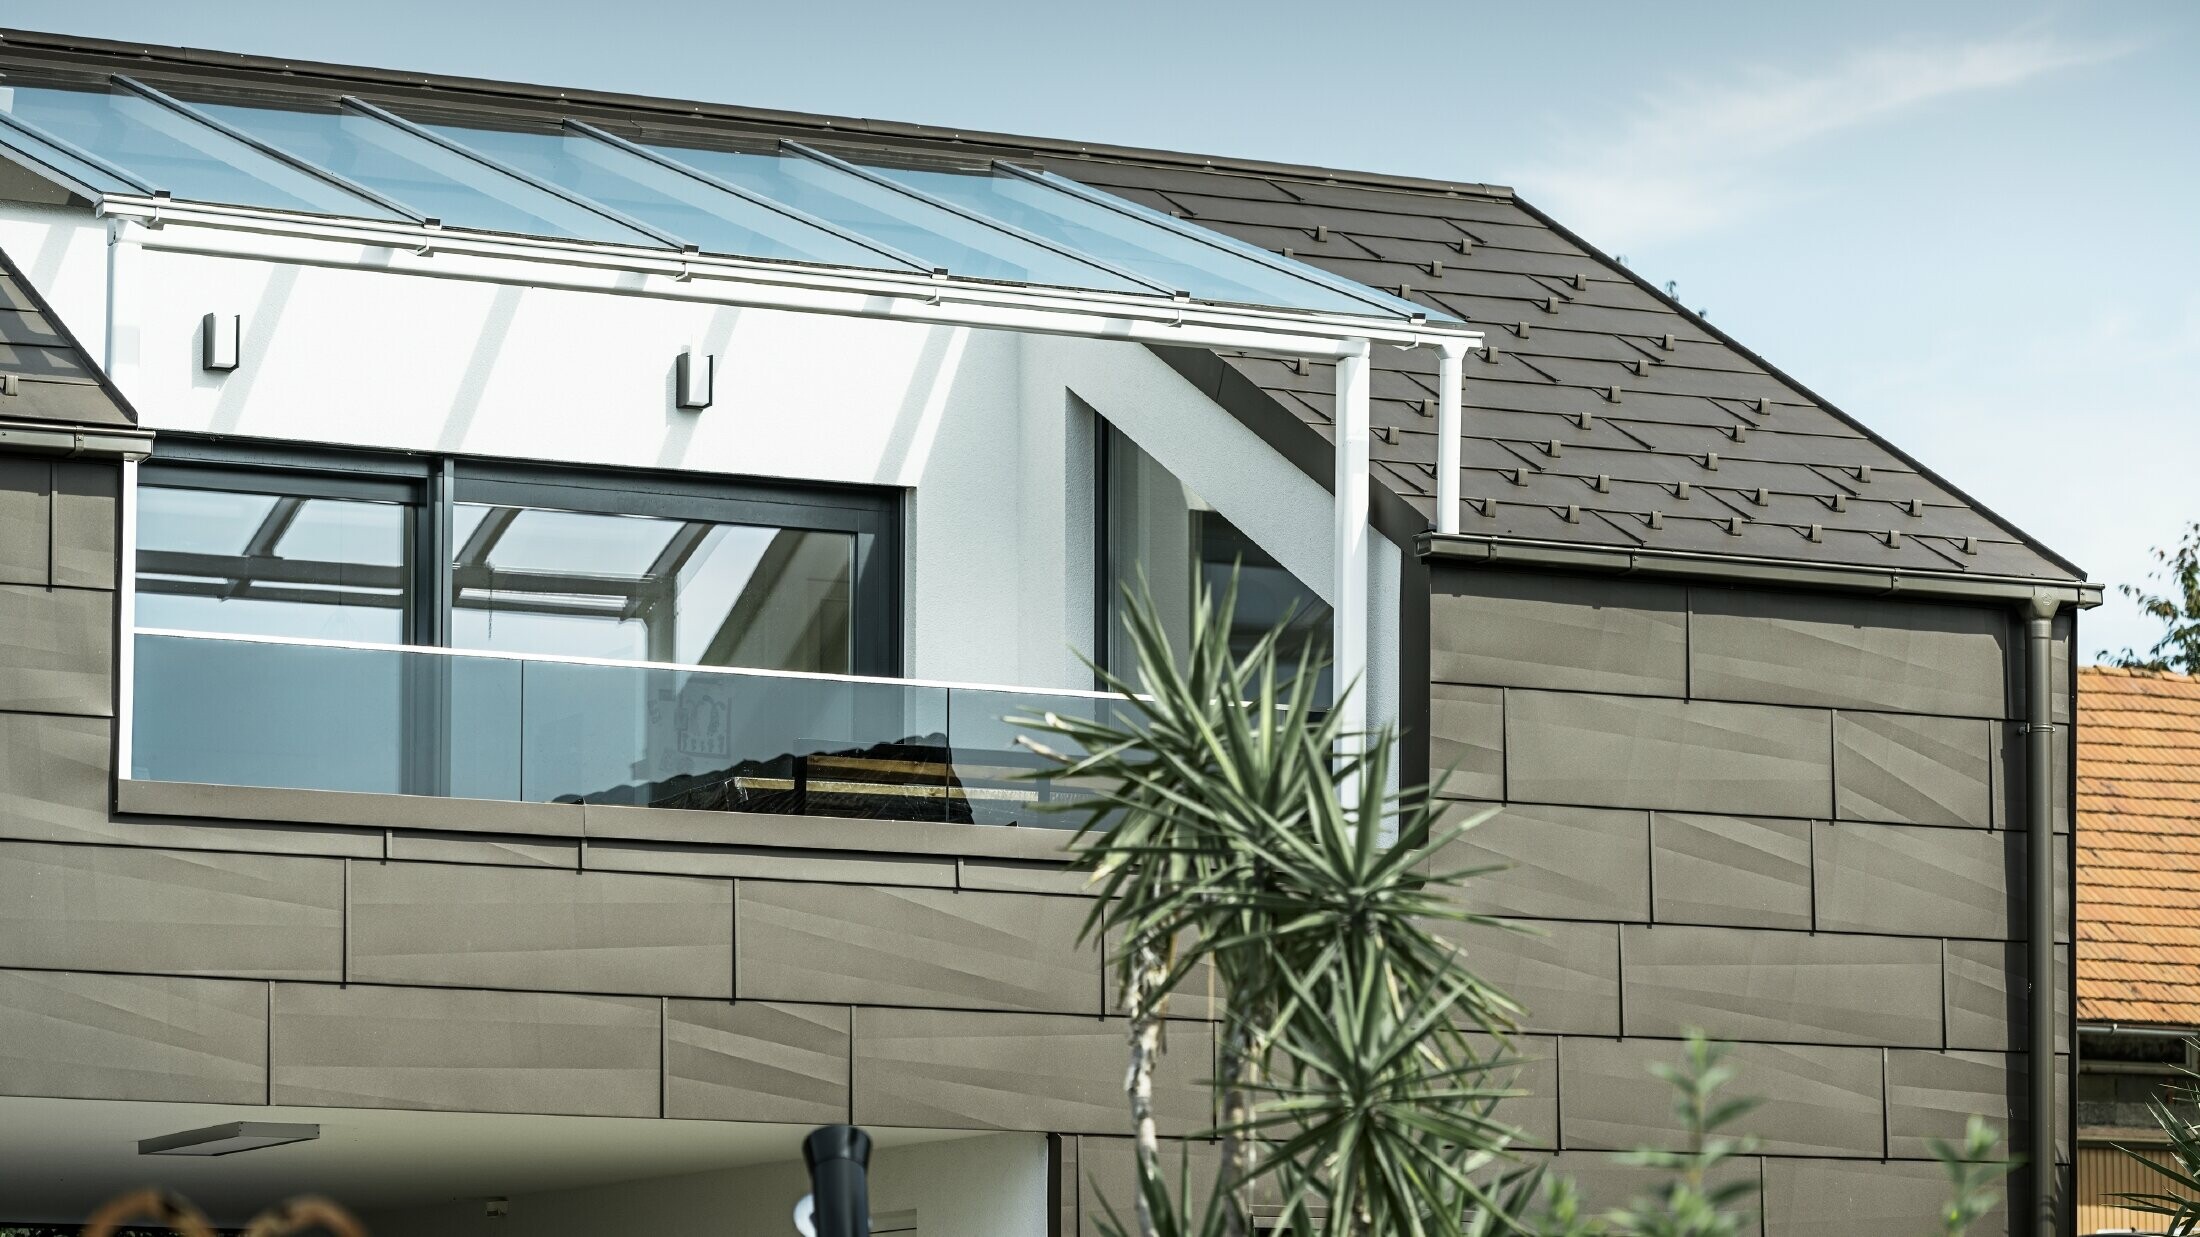 Přístavba kompletně opláštěná systémem PREFA, střechu a fasádu pokrývají střešní a fasádní panely FX.12 v barvě P.10 tmavě hnědé